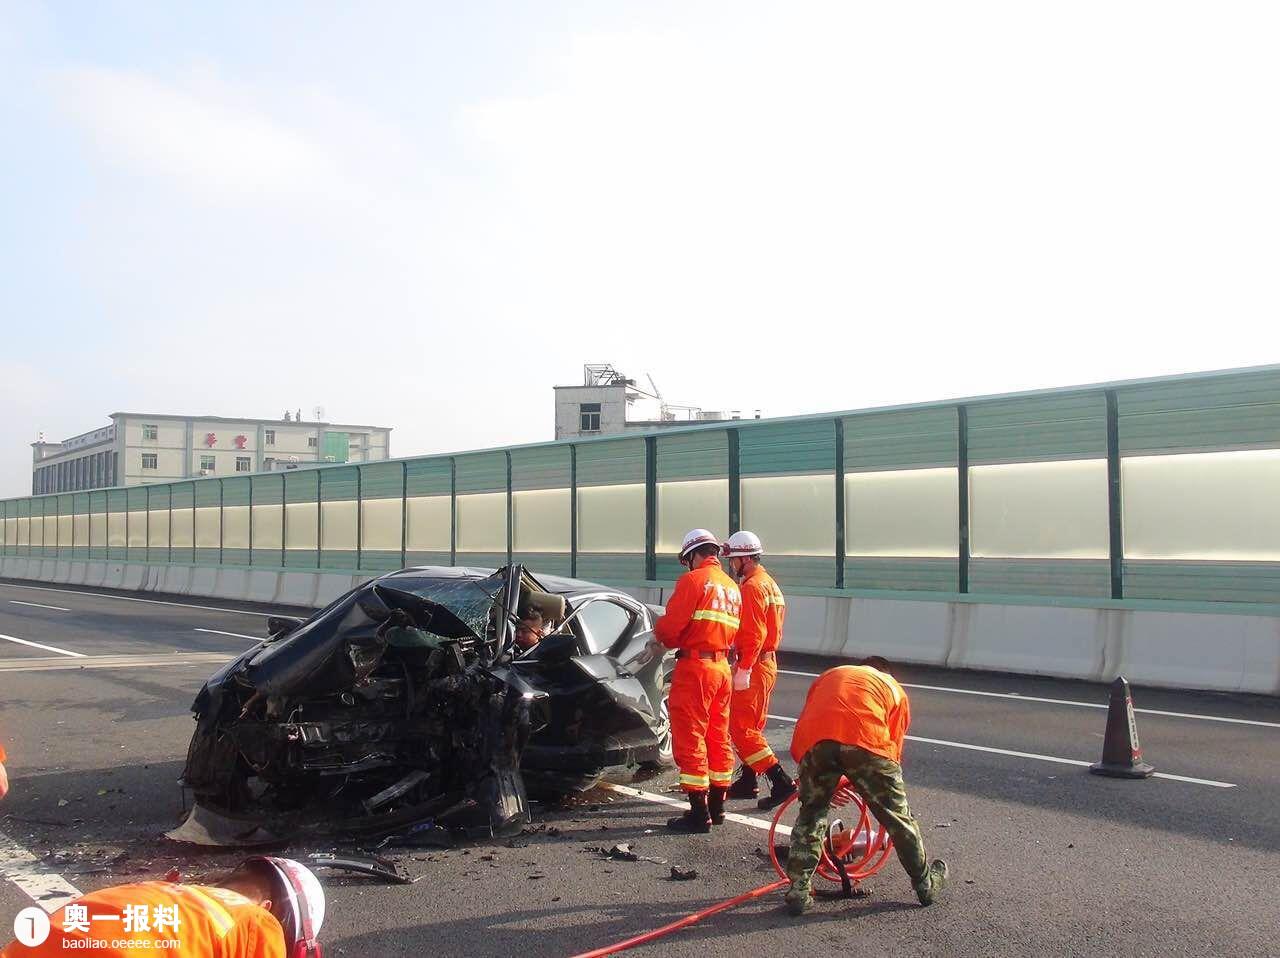 【突发新闻】 今天凌晨清平高速发生车祸司机被困